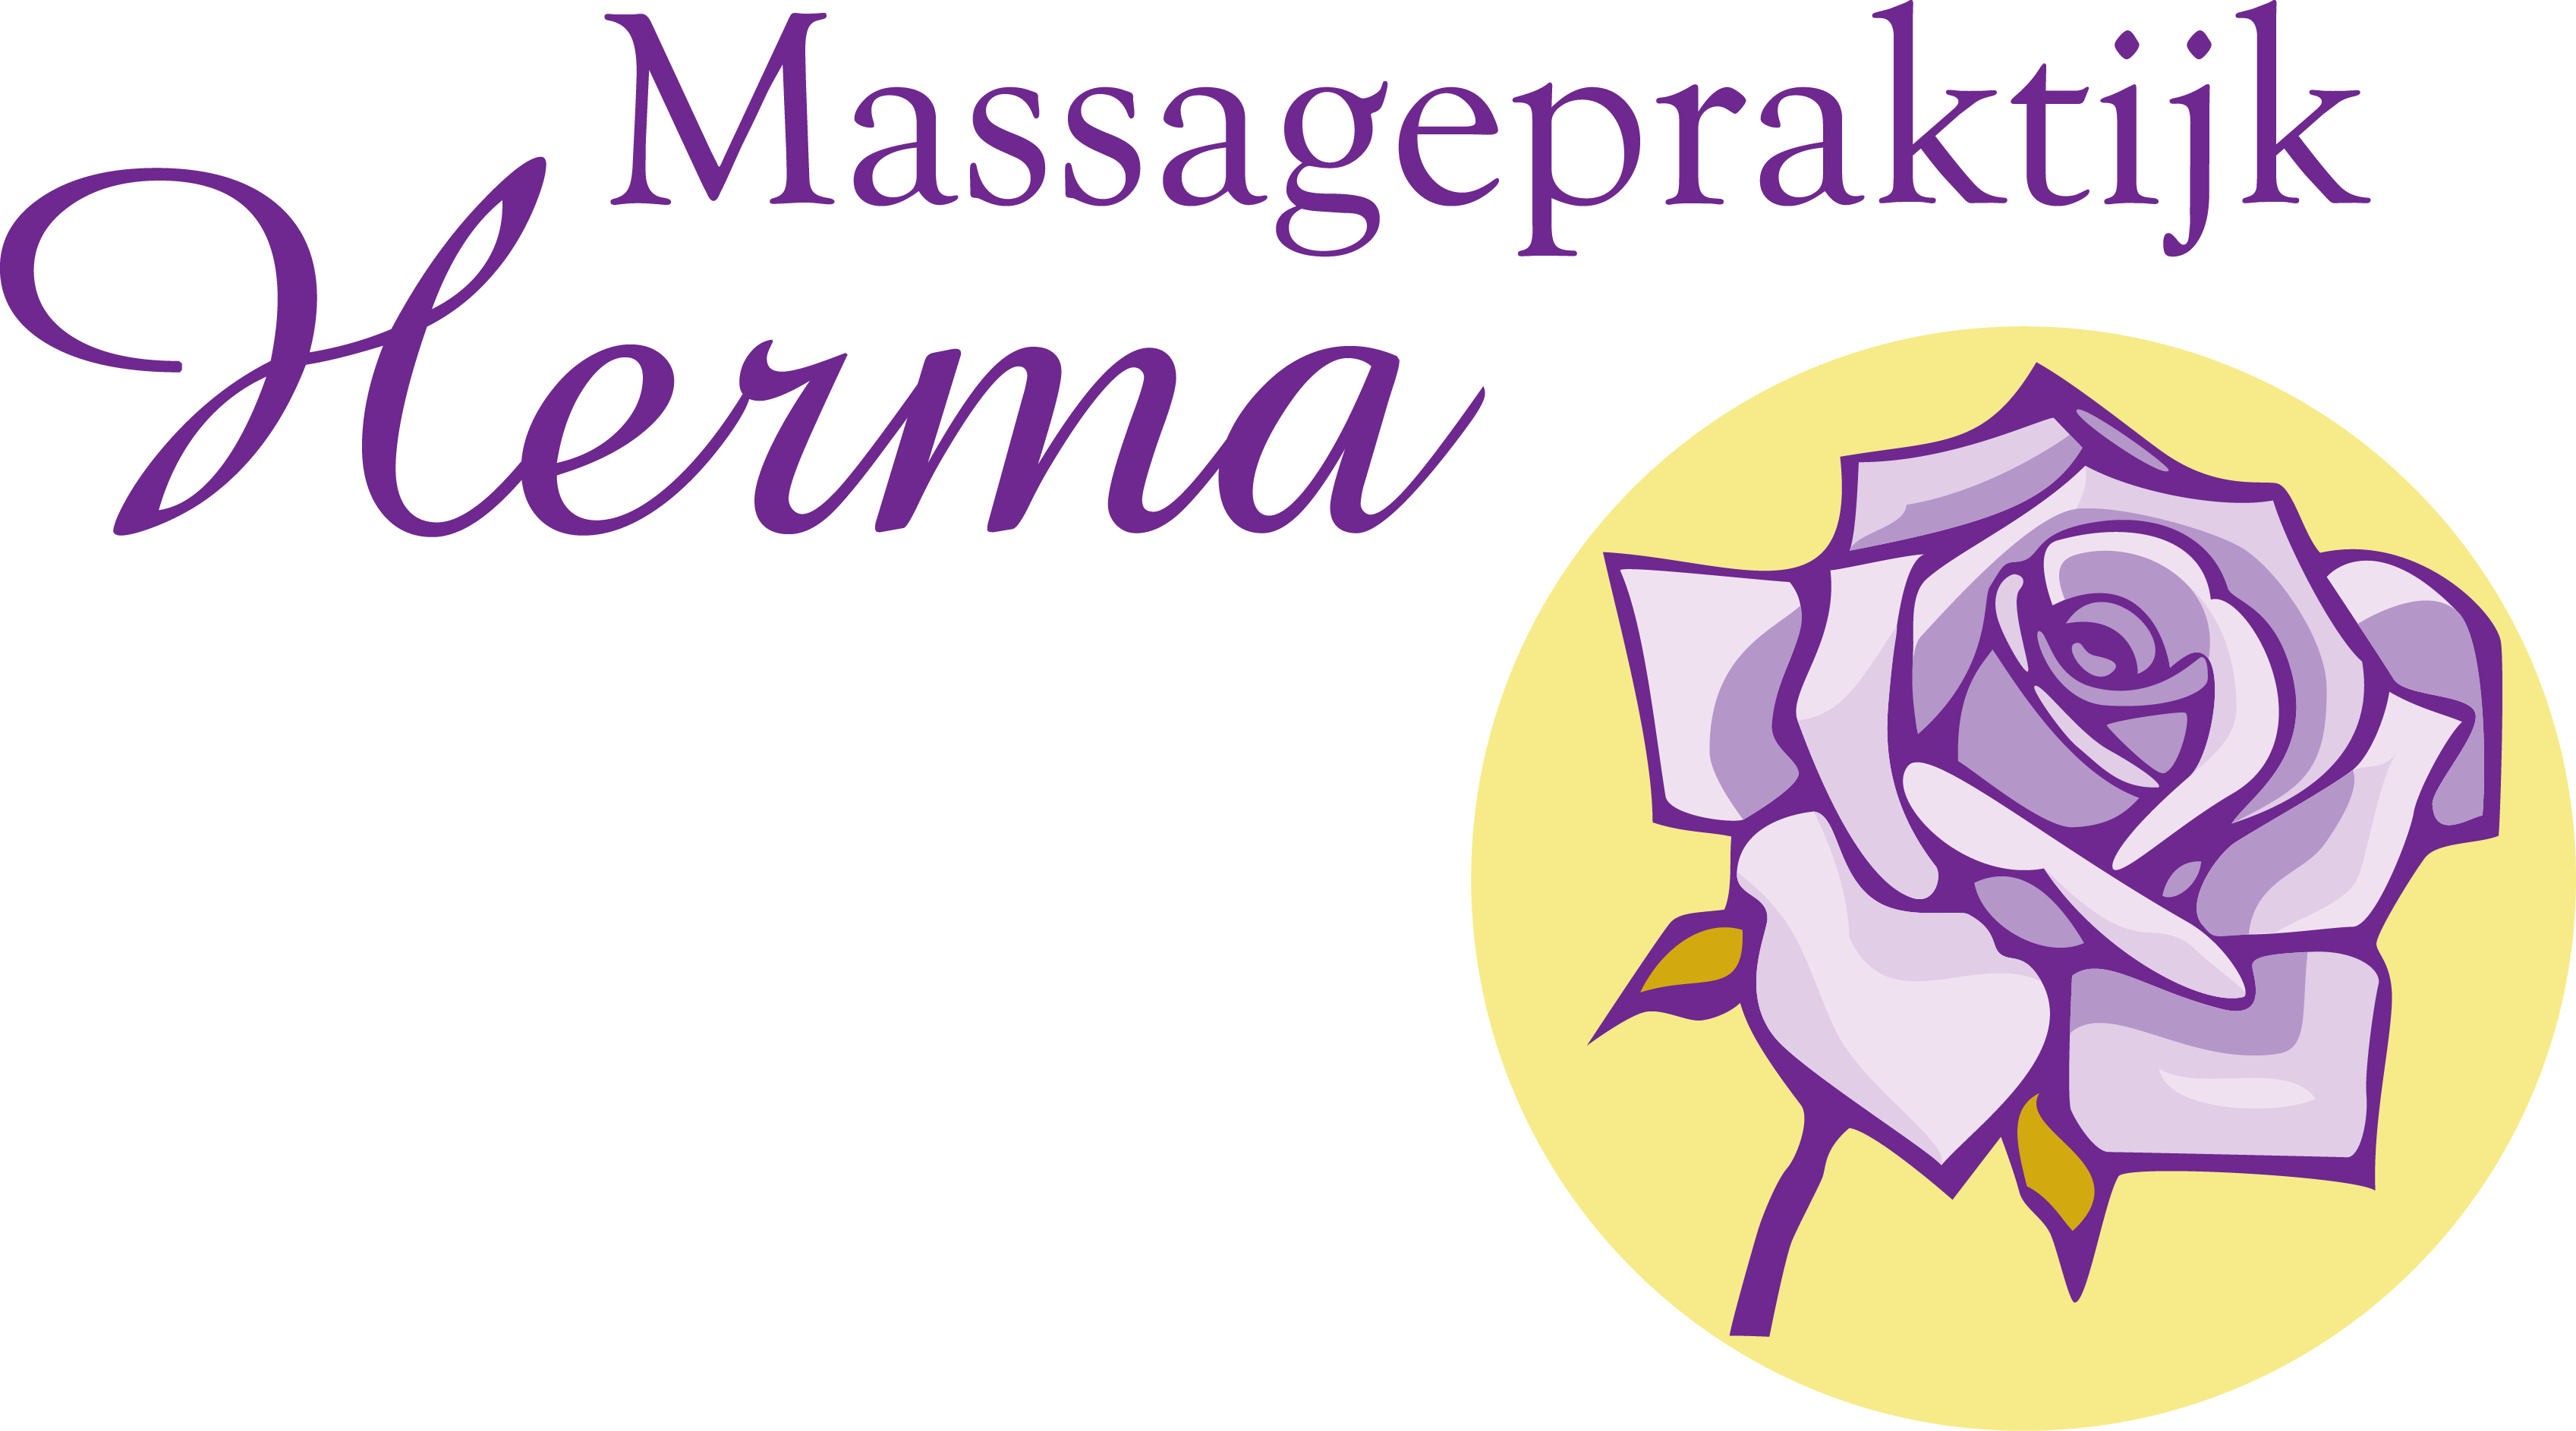 Massagepraktijk Herma 'Lekker in je vel' logo